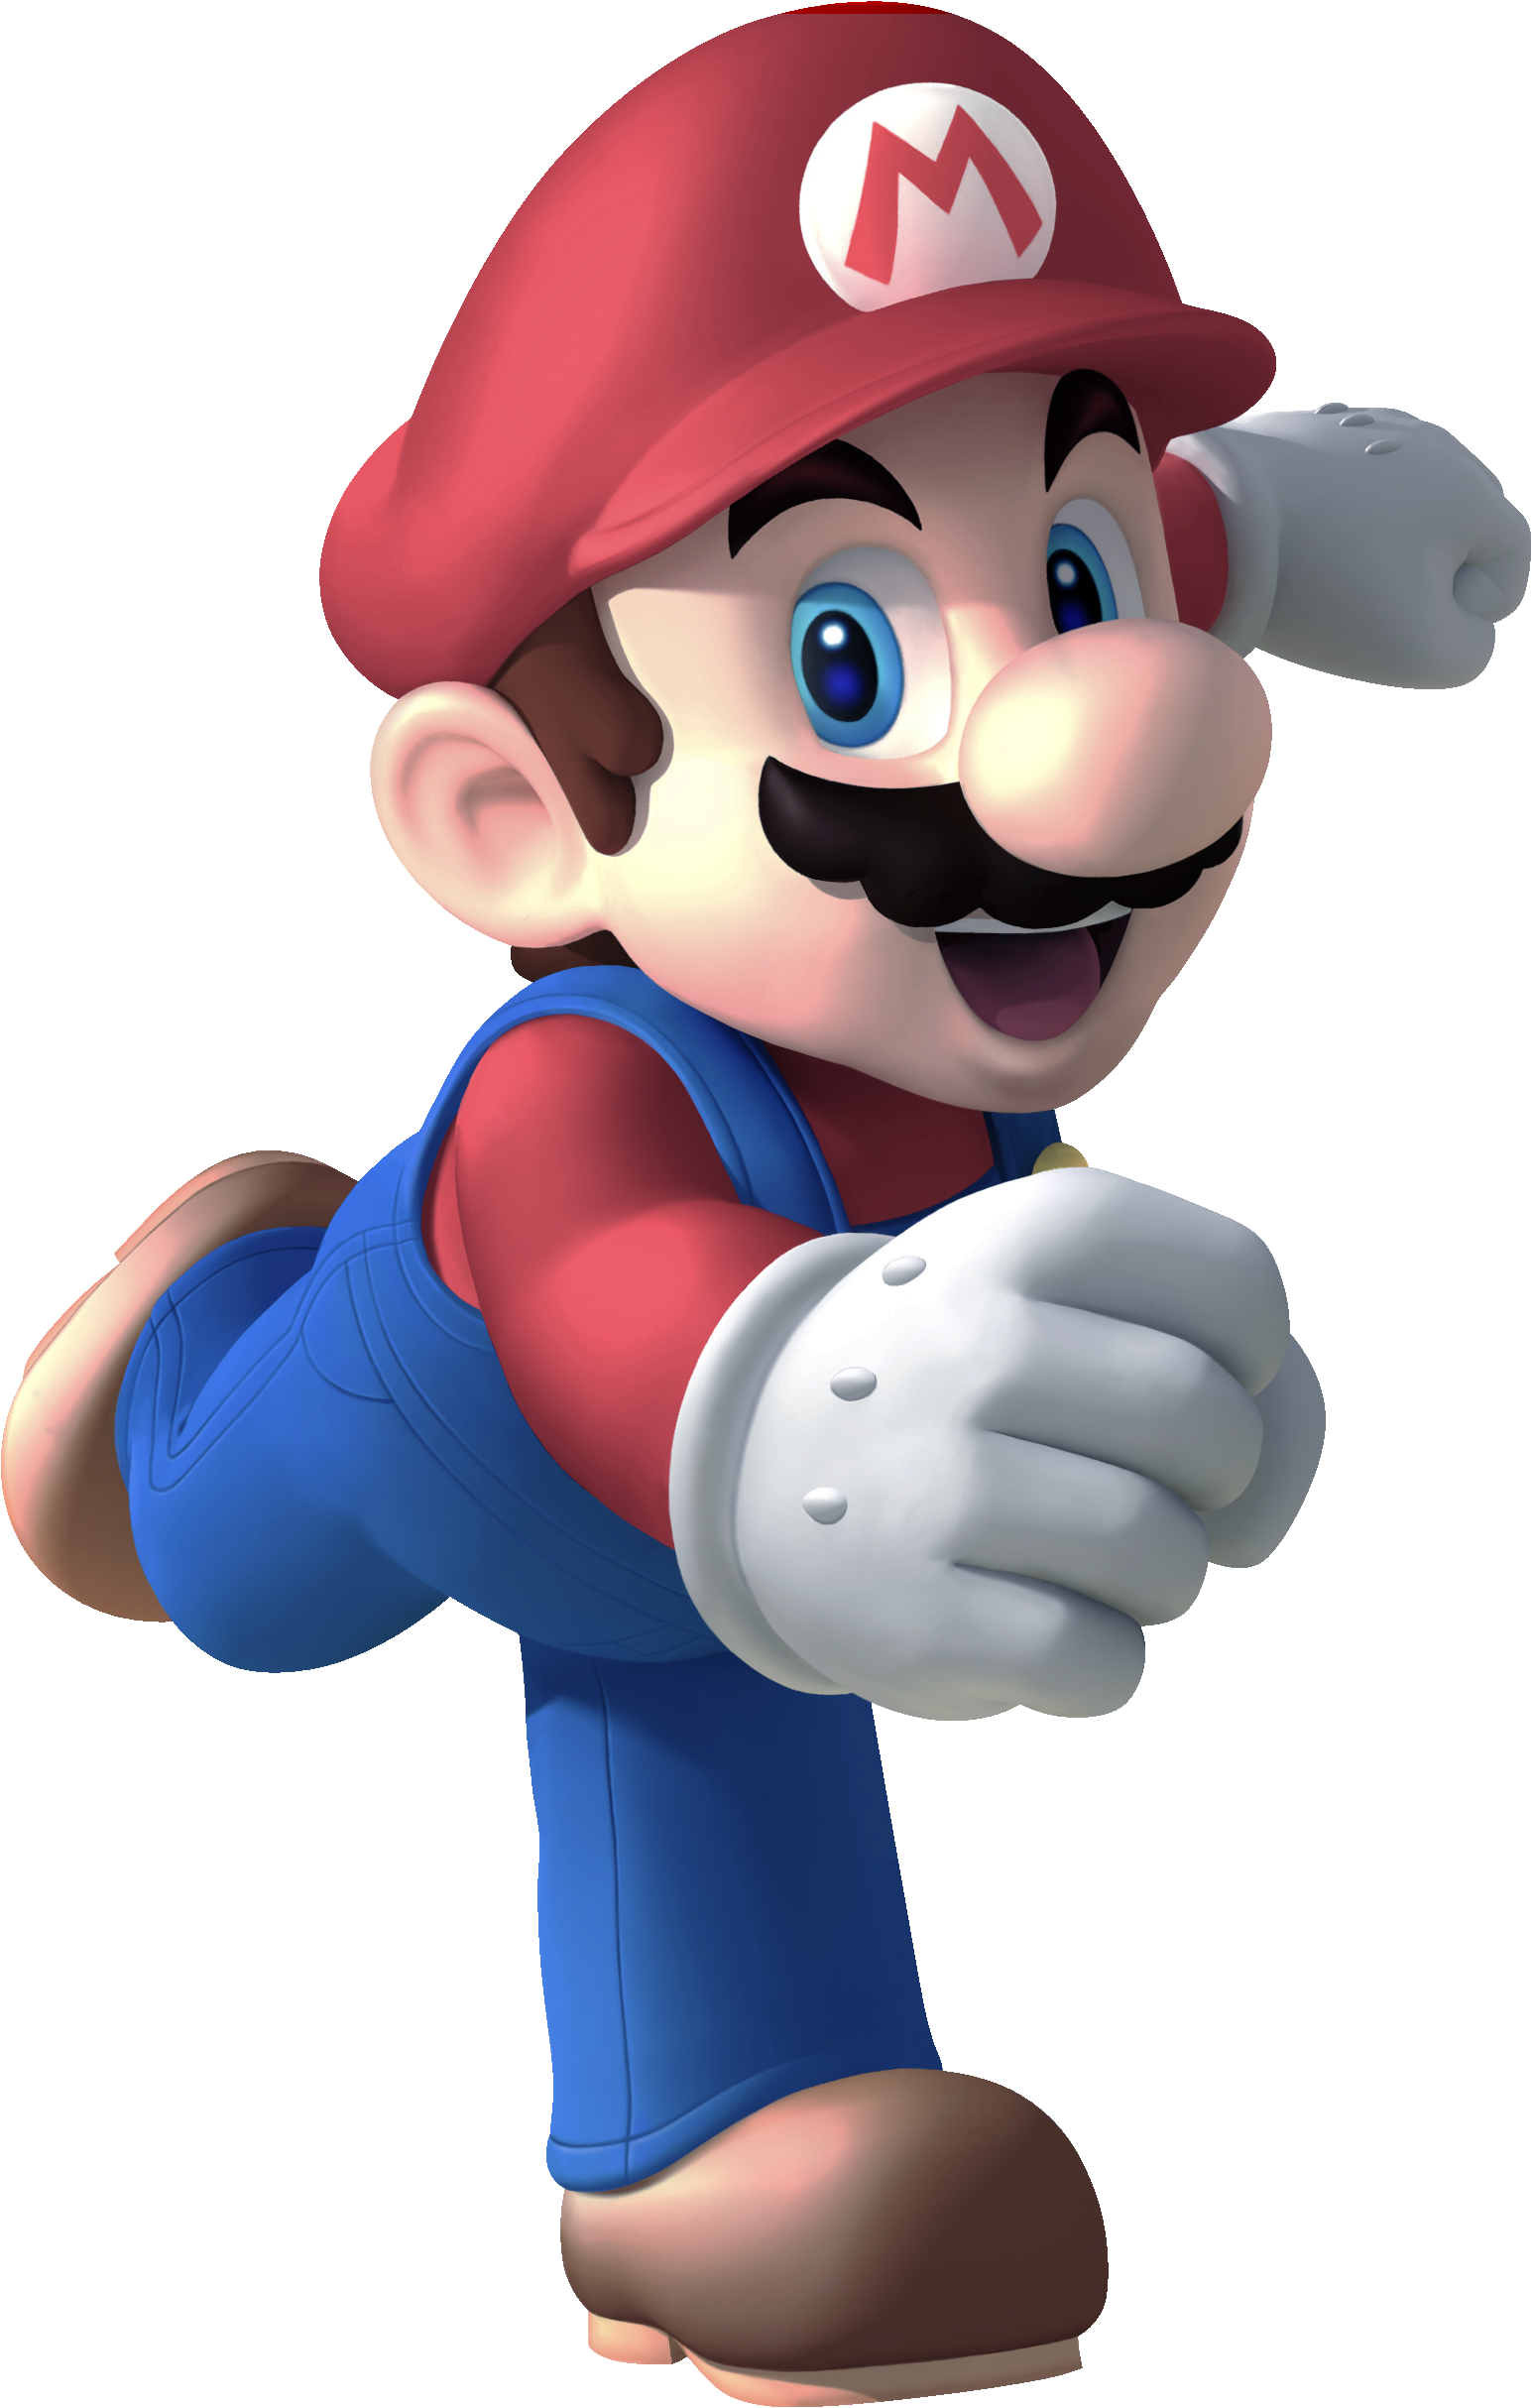 Mario2 - Mario Party Ds Mario (1545x2428), Png Download